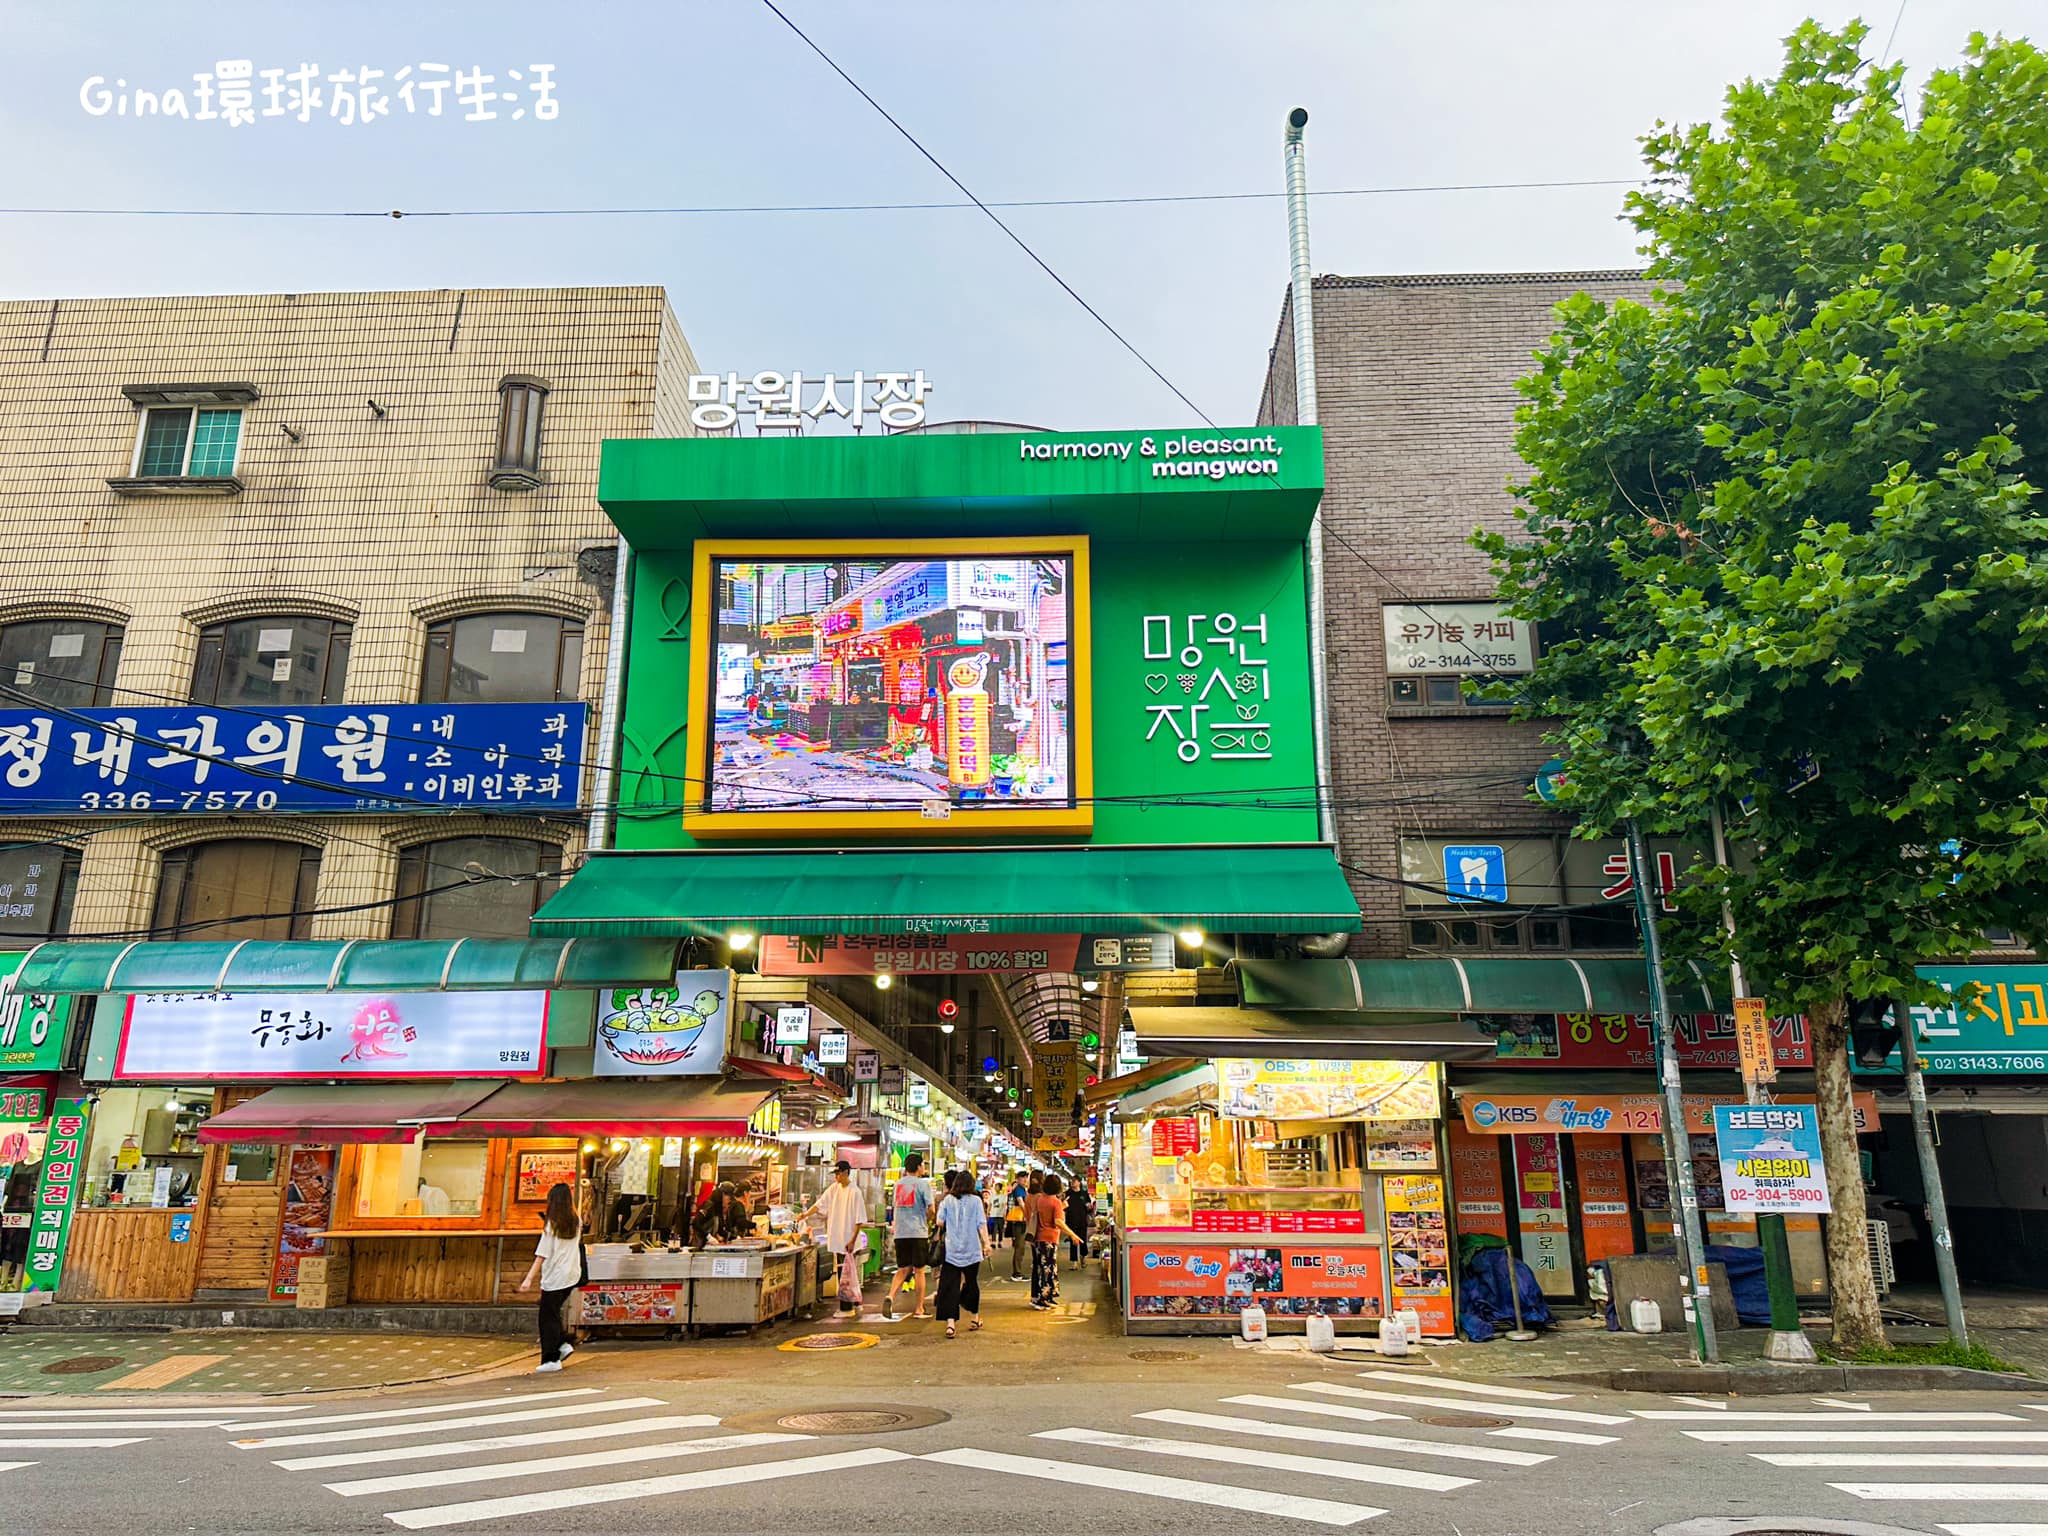 【望遠市場】望遠站韓國傳統市場 近弘大入口站 @GINA環球旅行生活